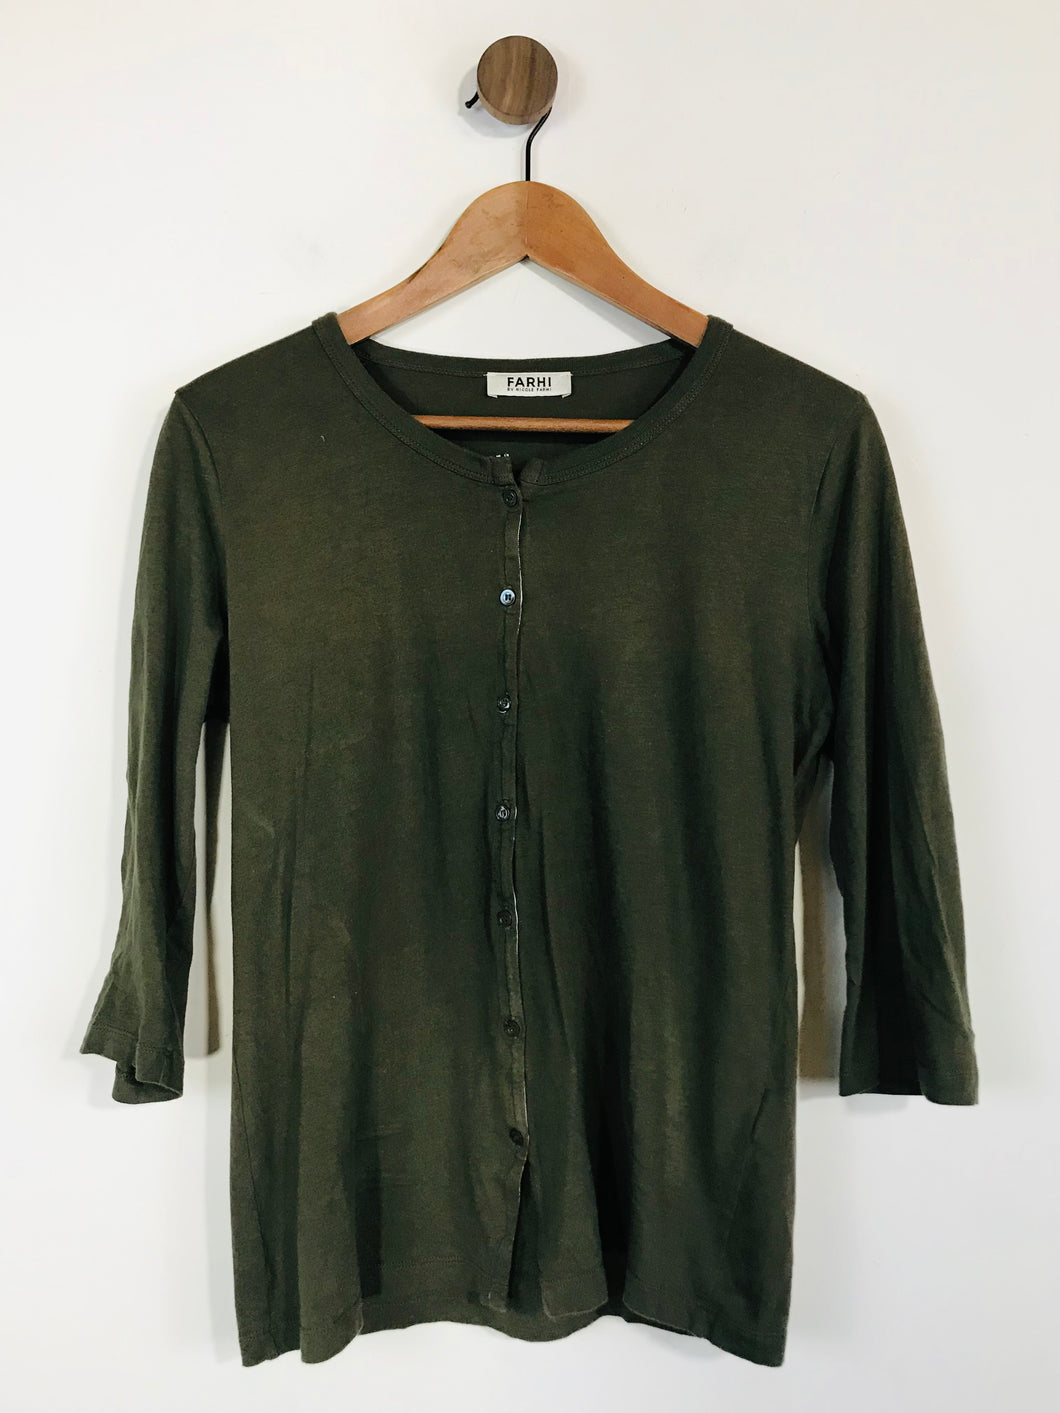 Nicole Farhi Women's Button Up T-Shirt | S UK8 | Green